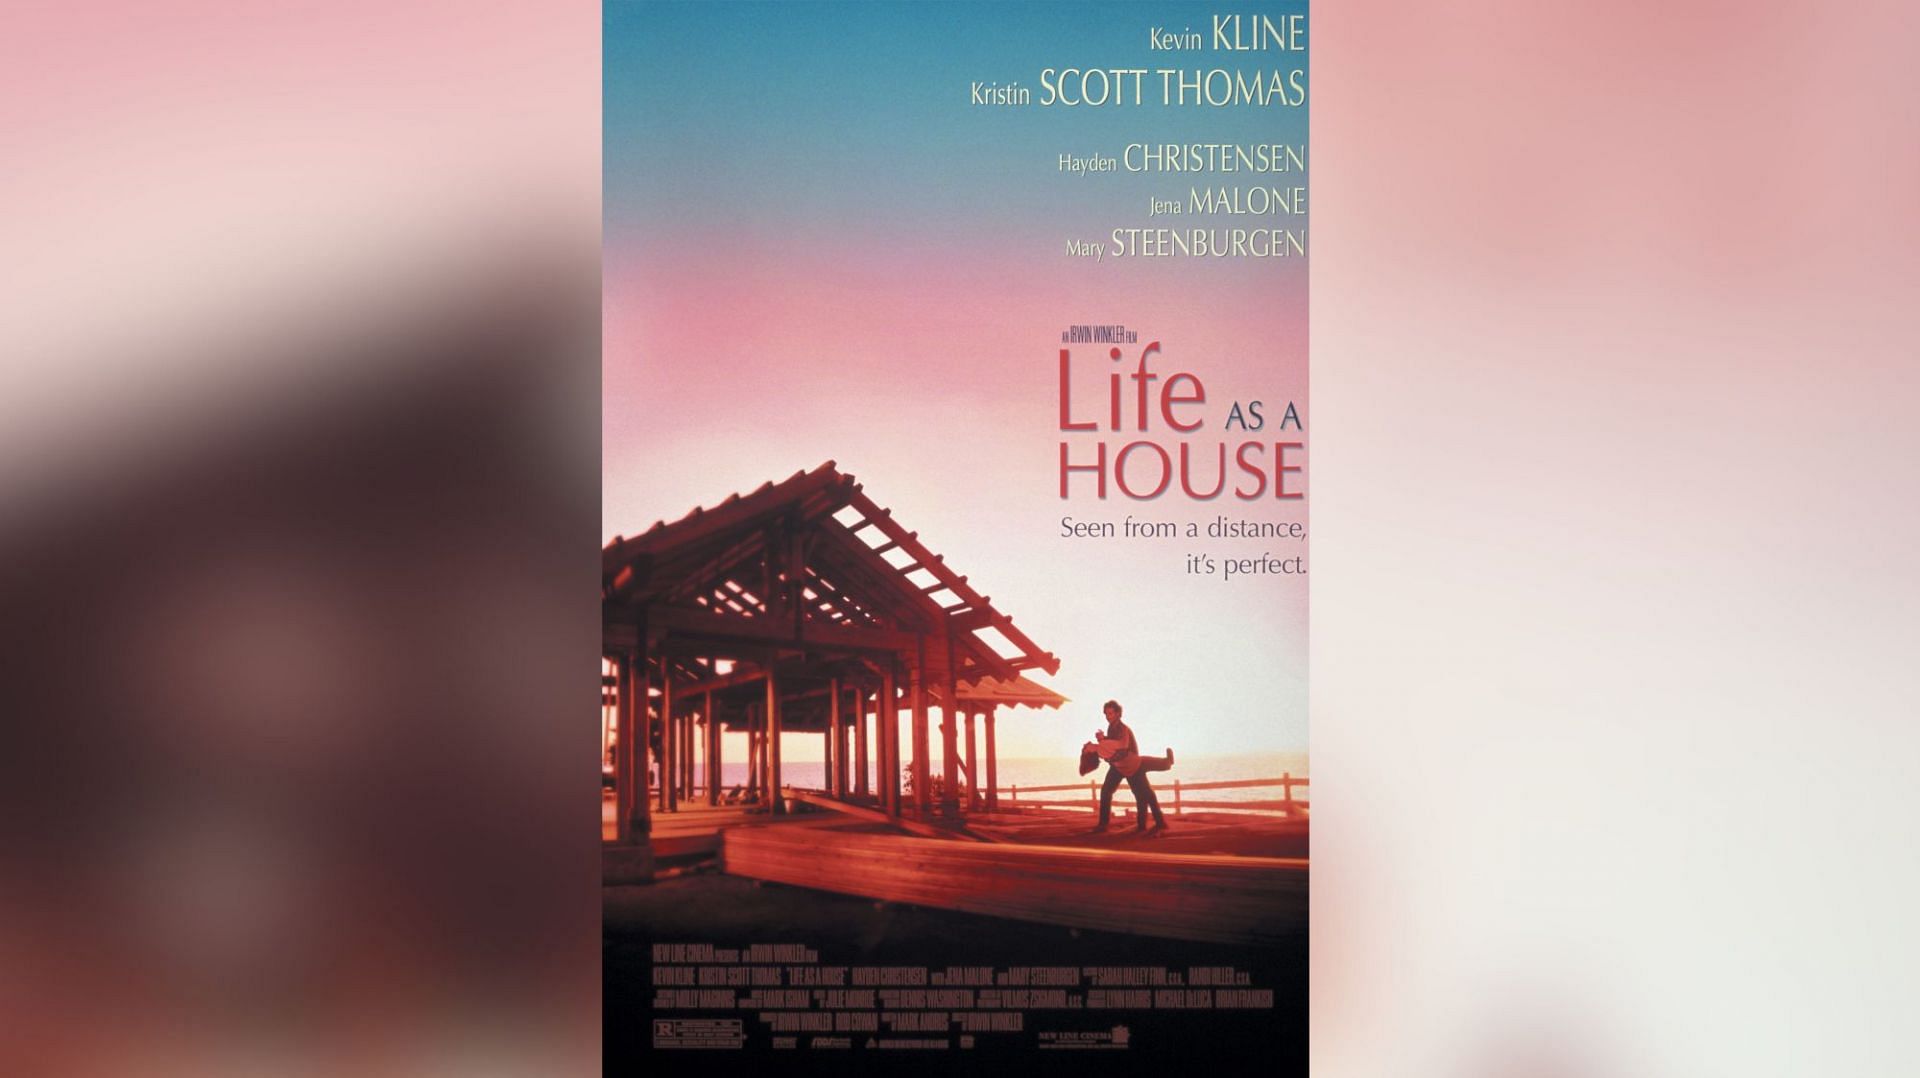 Life as a House (Image via New Line Cinema)